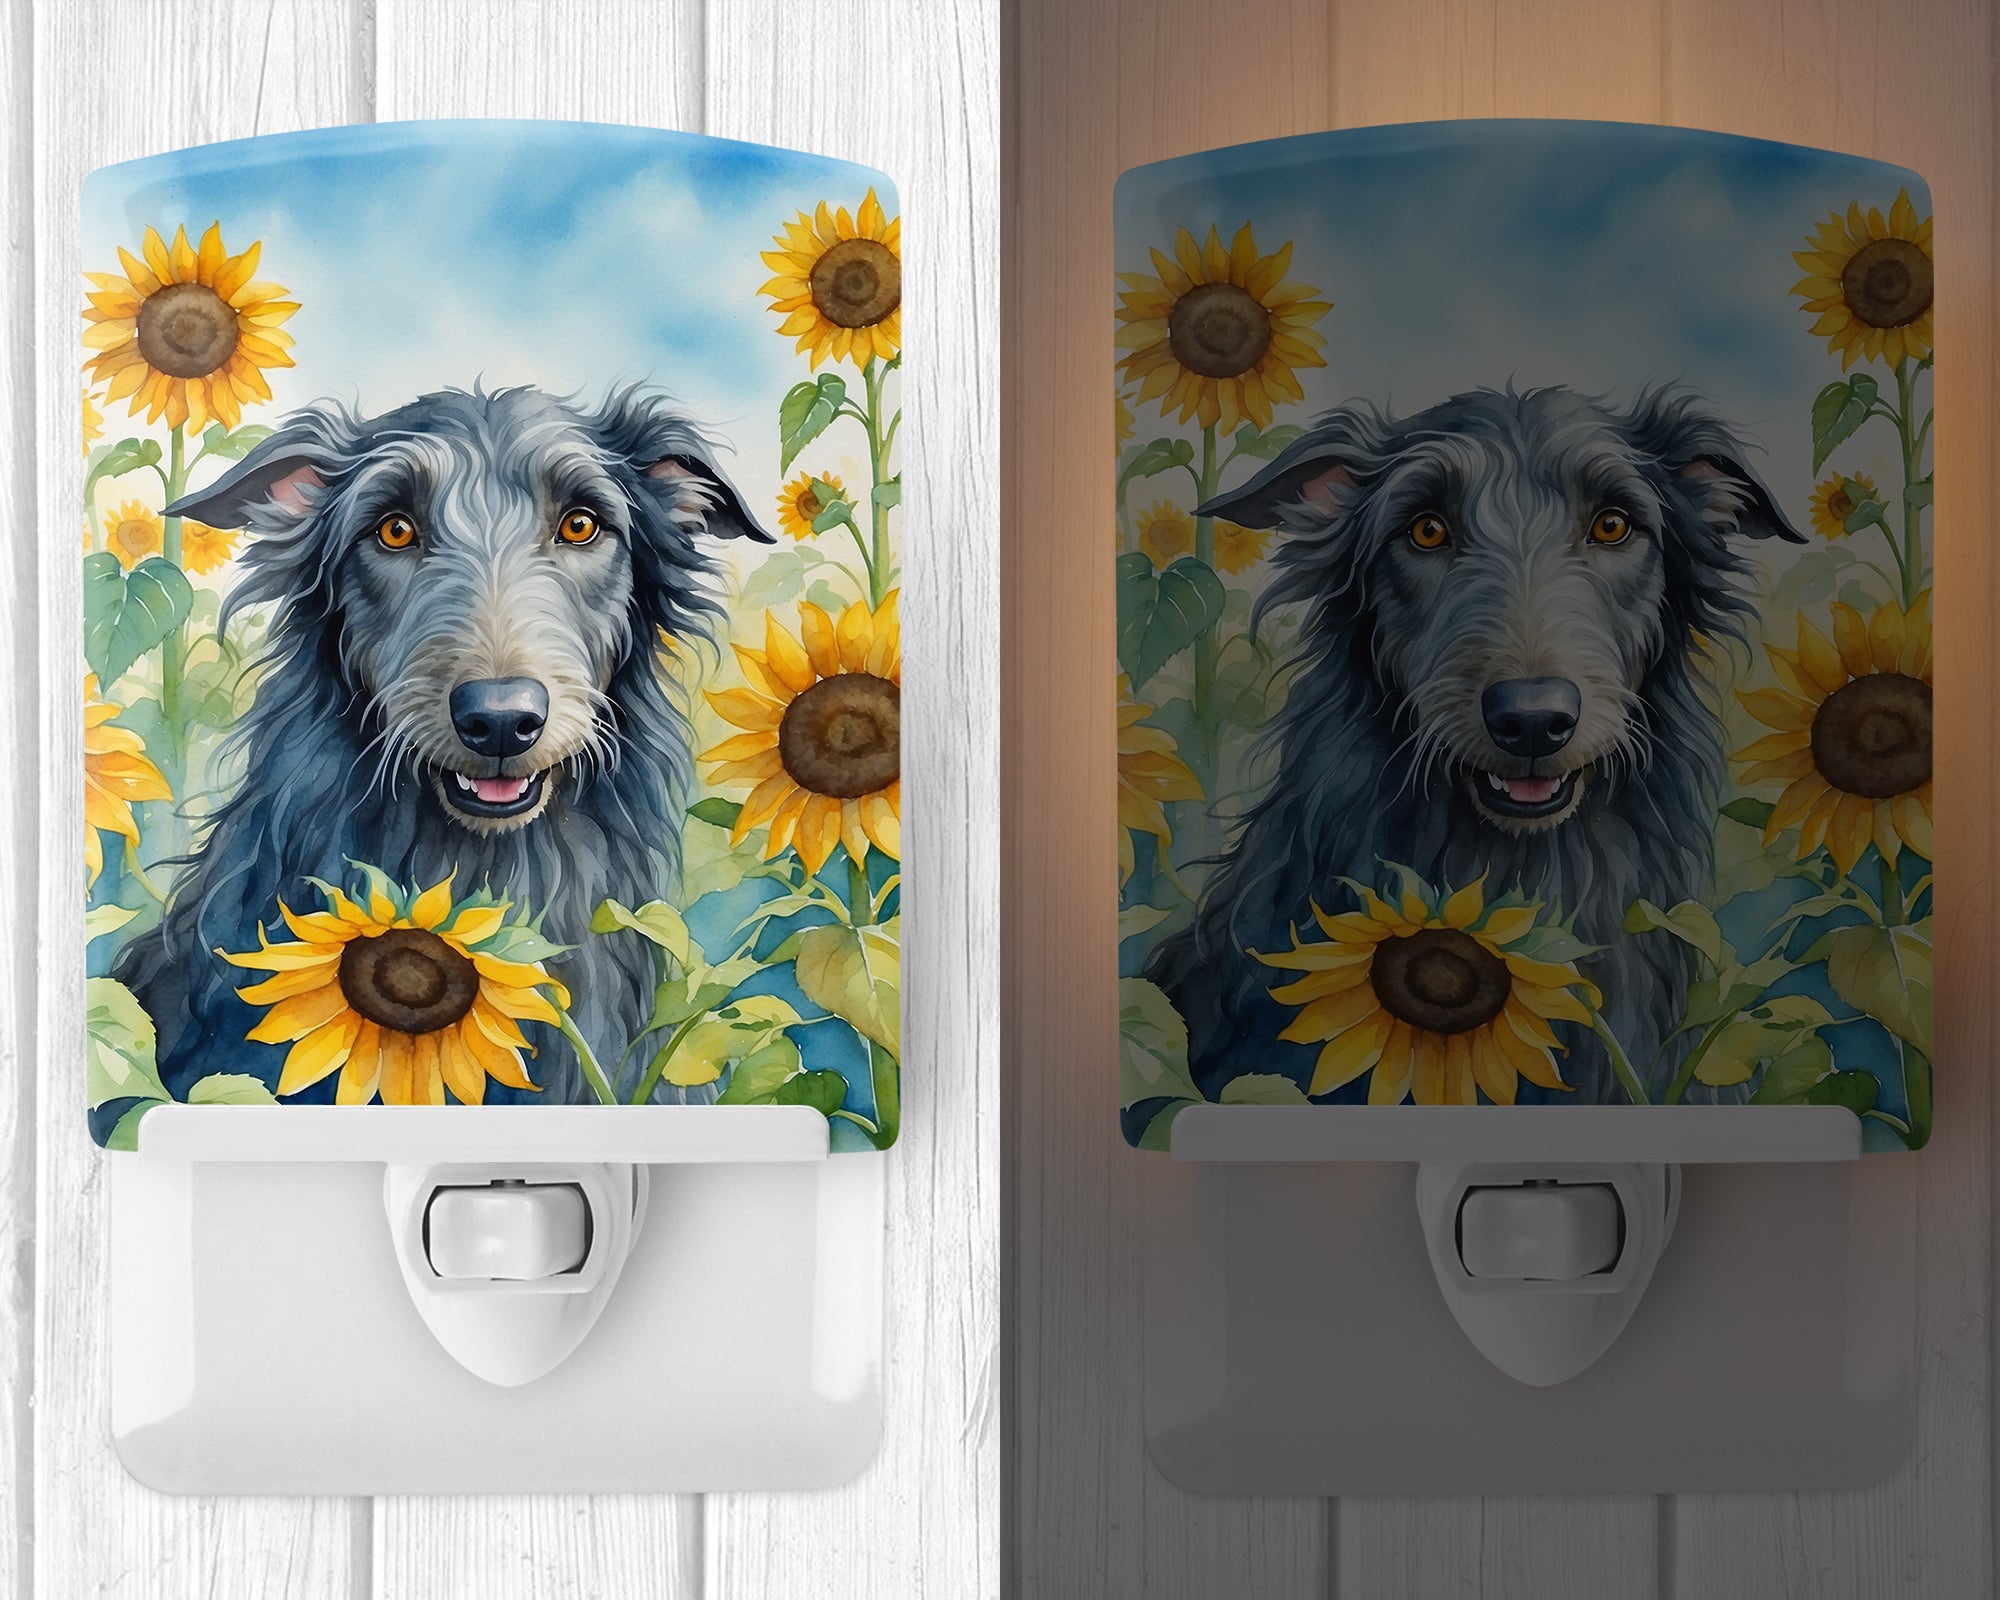 Buy this Scottish Deerhound in Sunflowers Ceramic Night Light